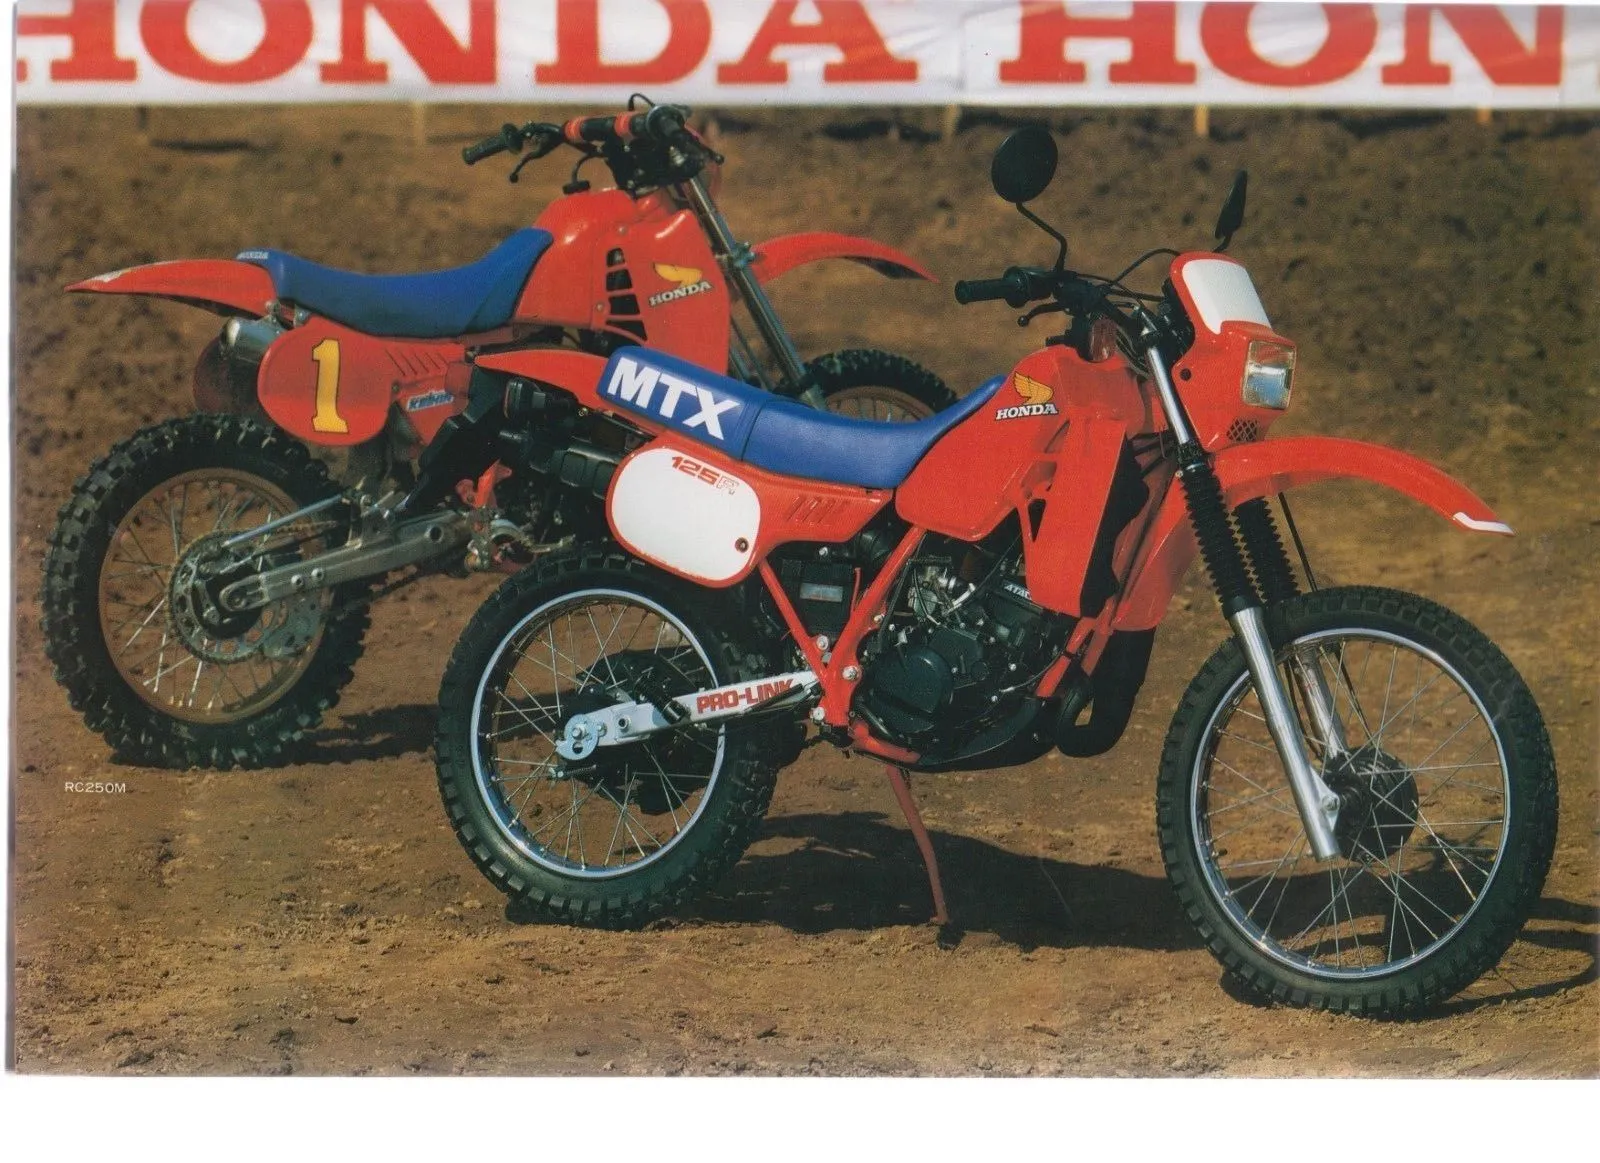 Moto del día: Honda MTX 125 R